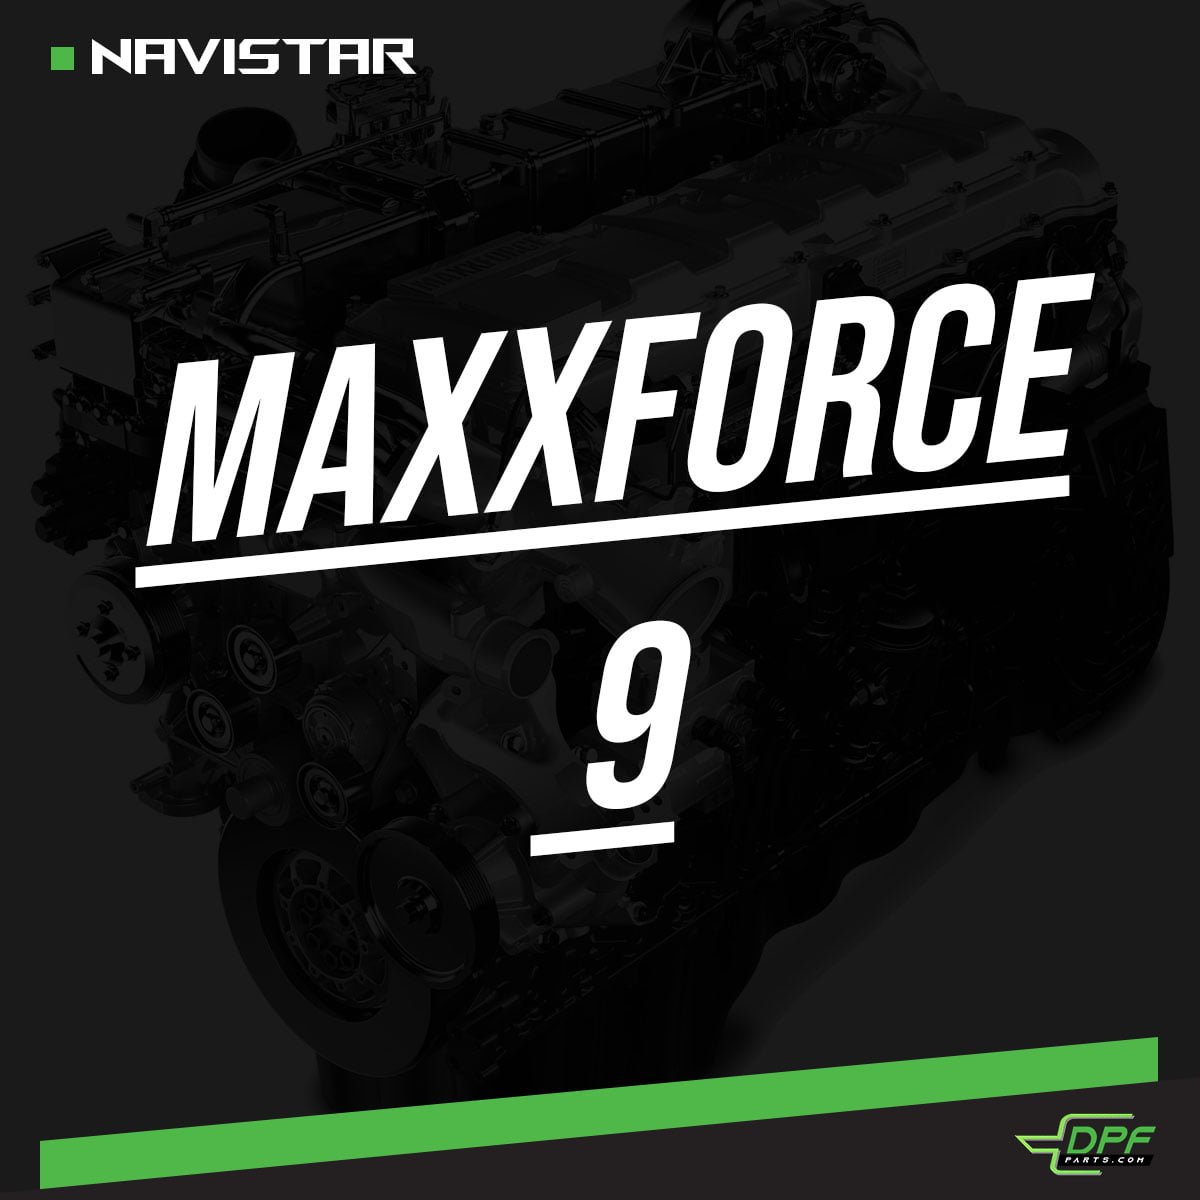 Maxxforce 9